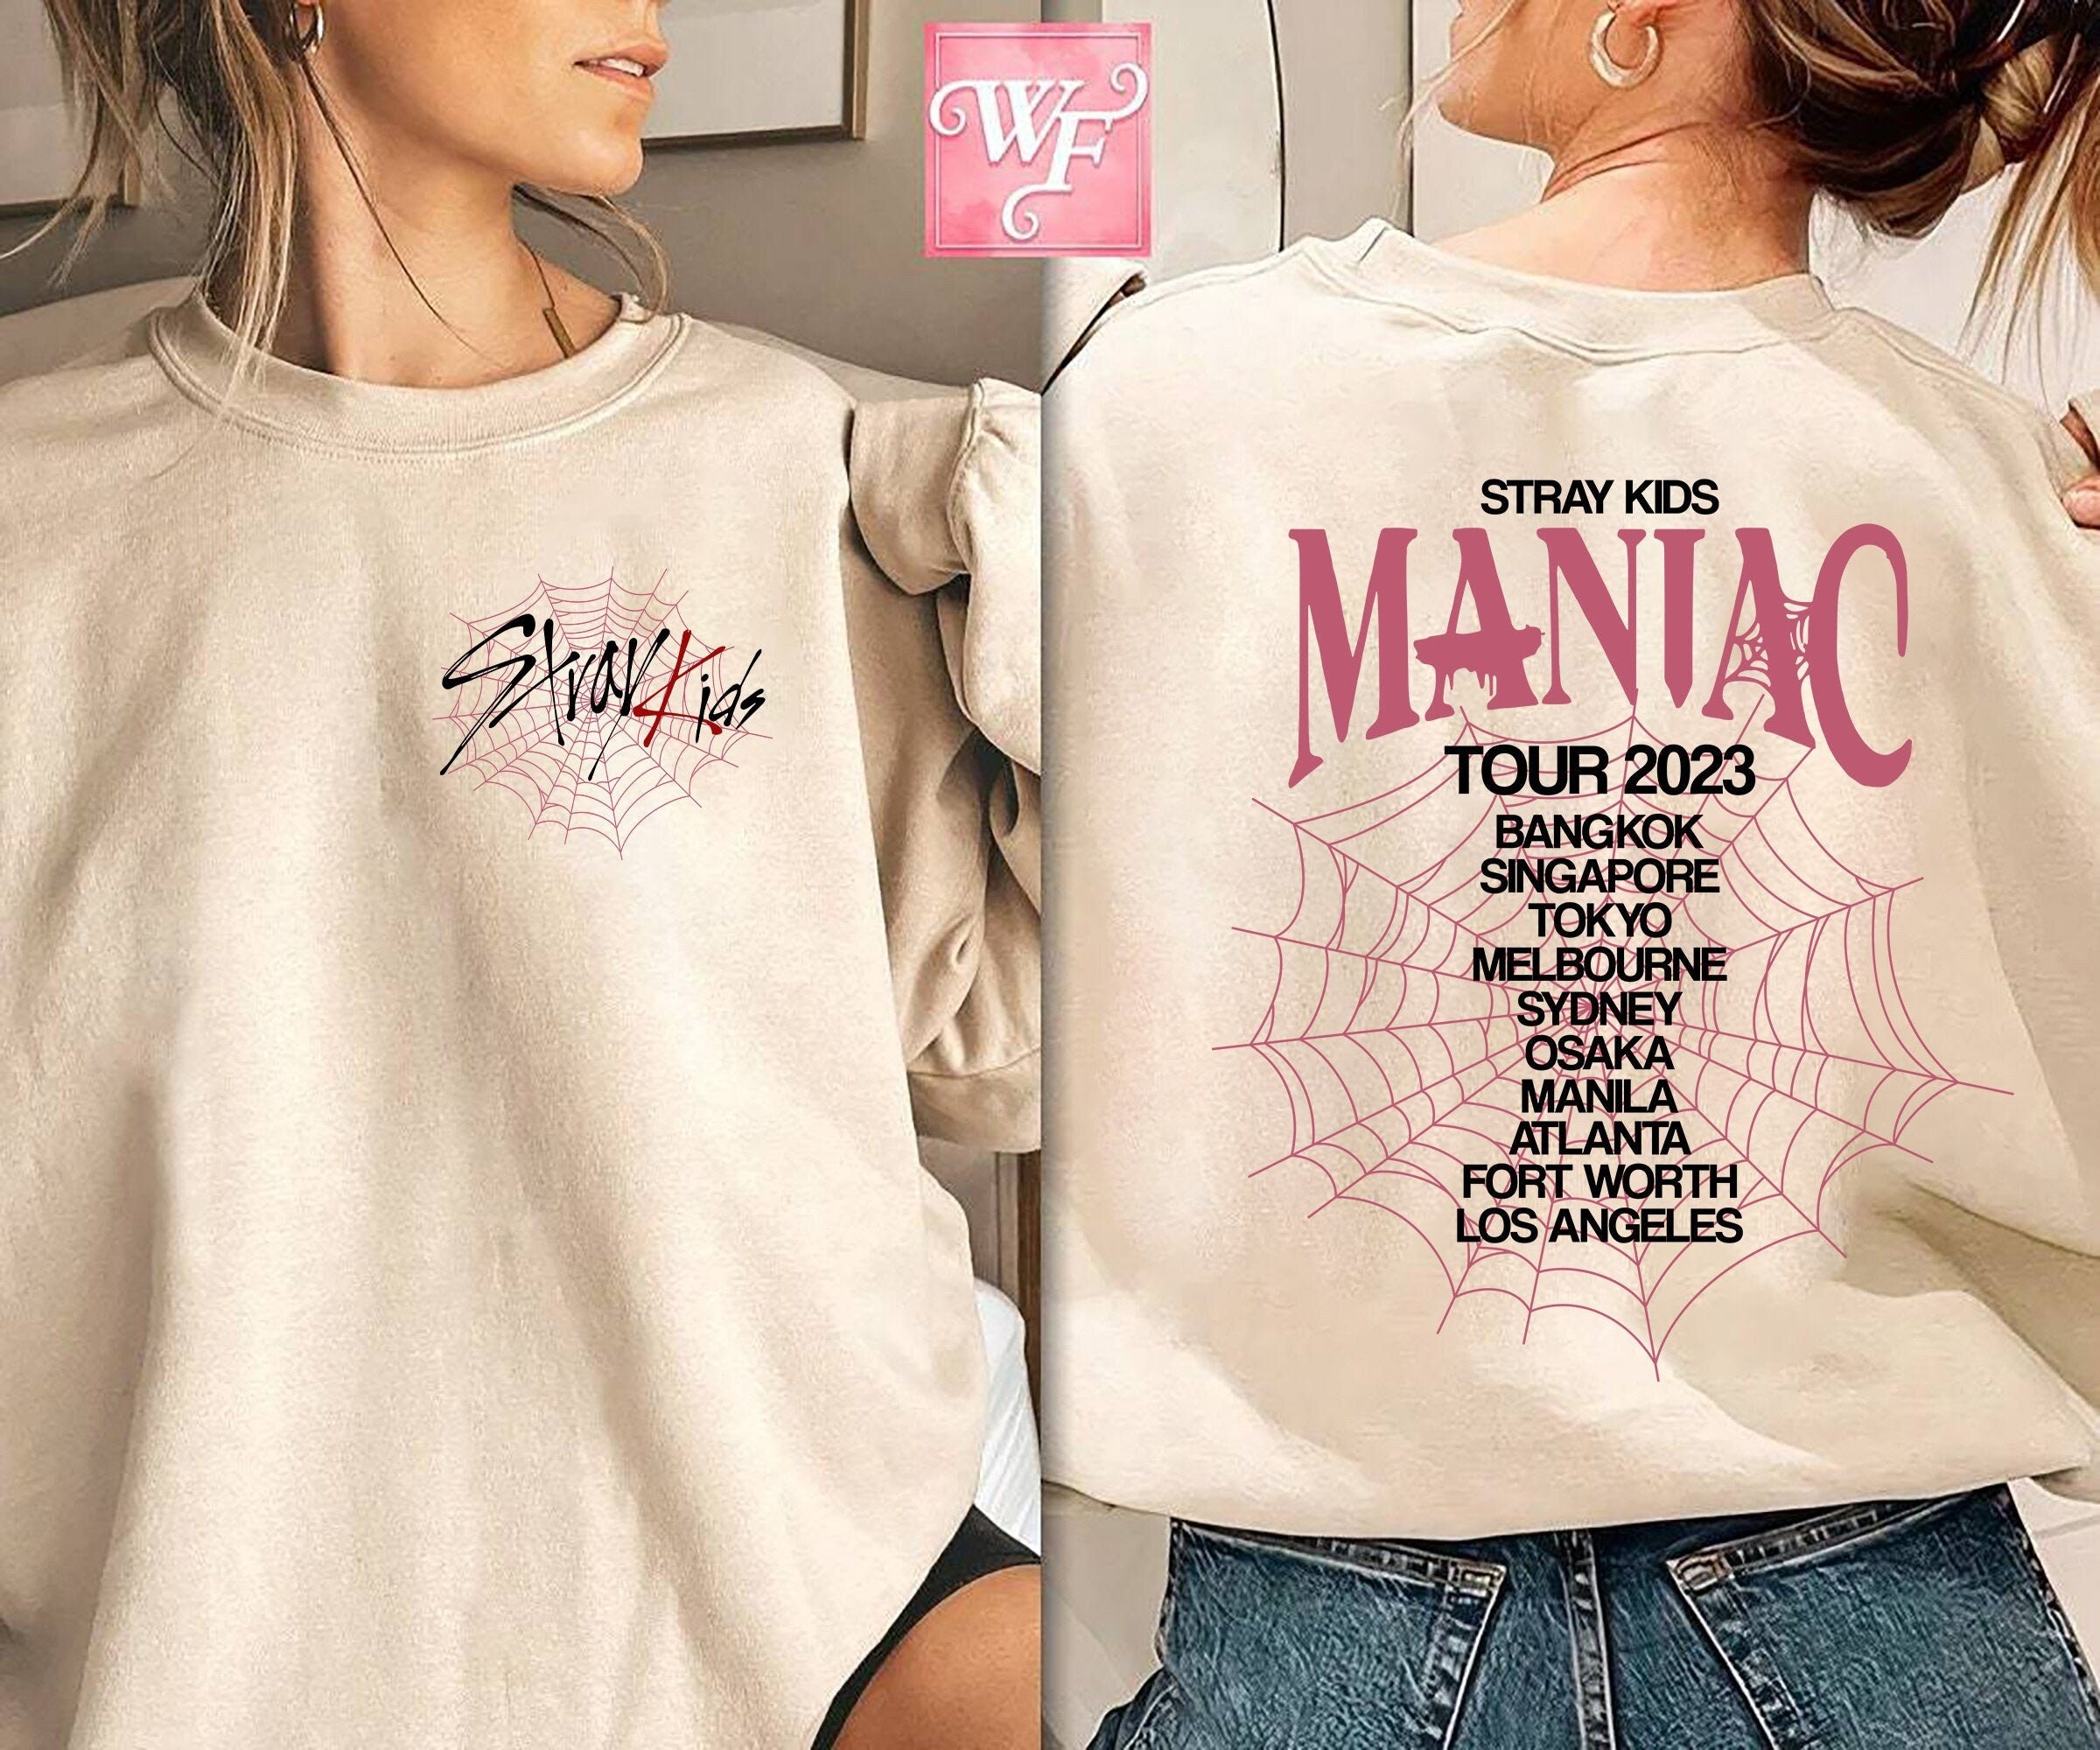 Kpop | Stray | 42021100 Fan Tour 2023 Maniac 20% Concert sold Kids T-shirt, Sweatshirt by Printerval SKU Robert Miller Made World OFF